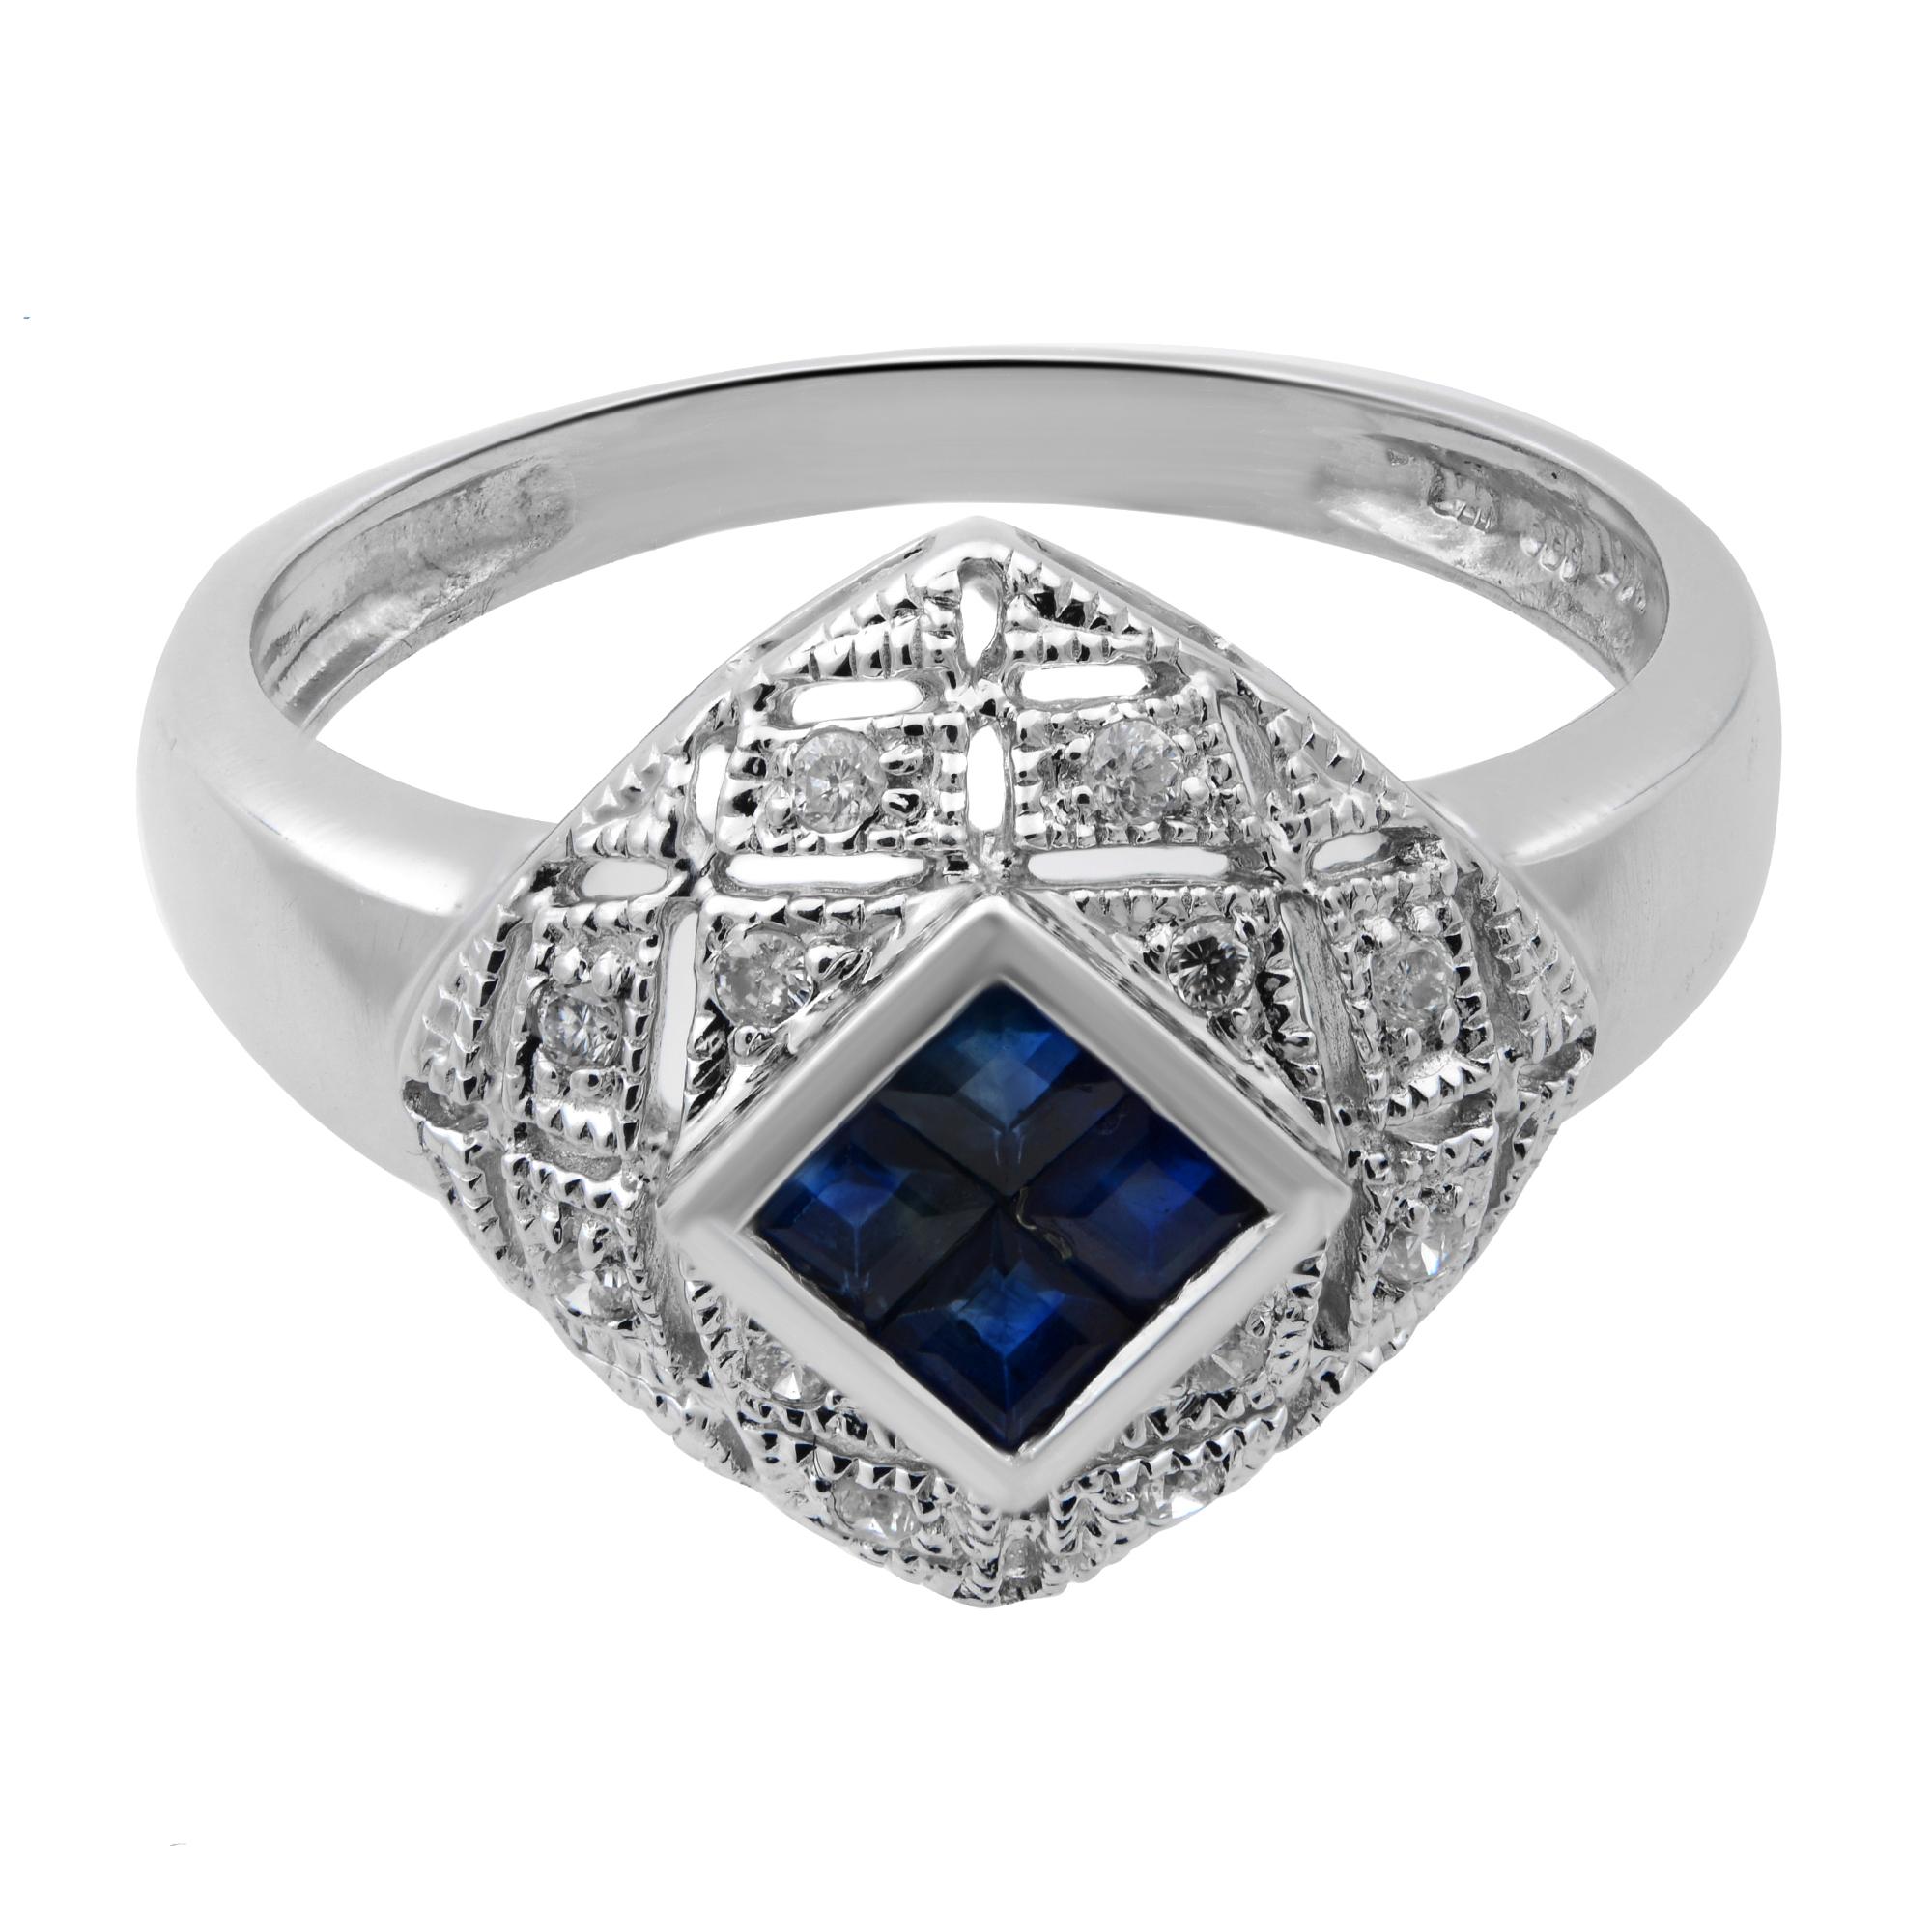 Dieser wunderschöne Damenring ist mit 0,25 Karat blauen Saphiren im Prinzessinnenschliff und 0,10 Karat weiß schimmernden Diamanten besetzt. Der Ring ist aus 14 Karat Weißgold gefertigt. Ring Größe 7. Gesamtgewicht: 3,30 Gramm. Toller gebrauchter